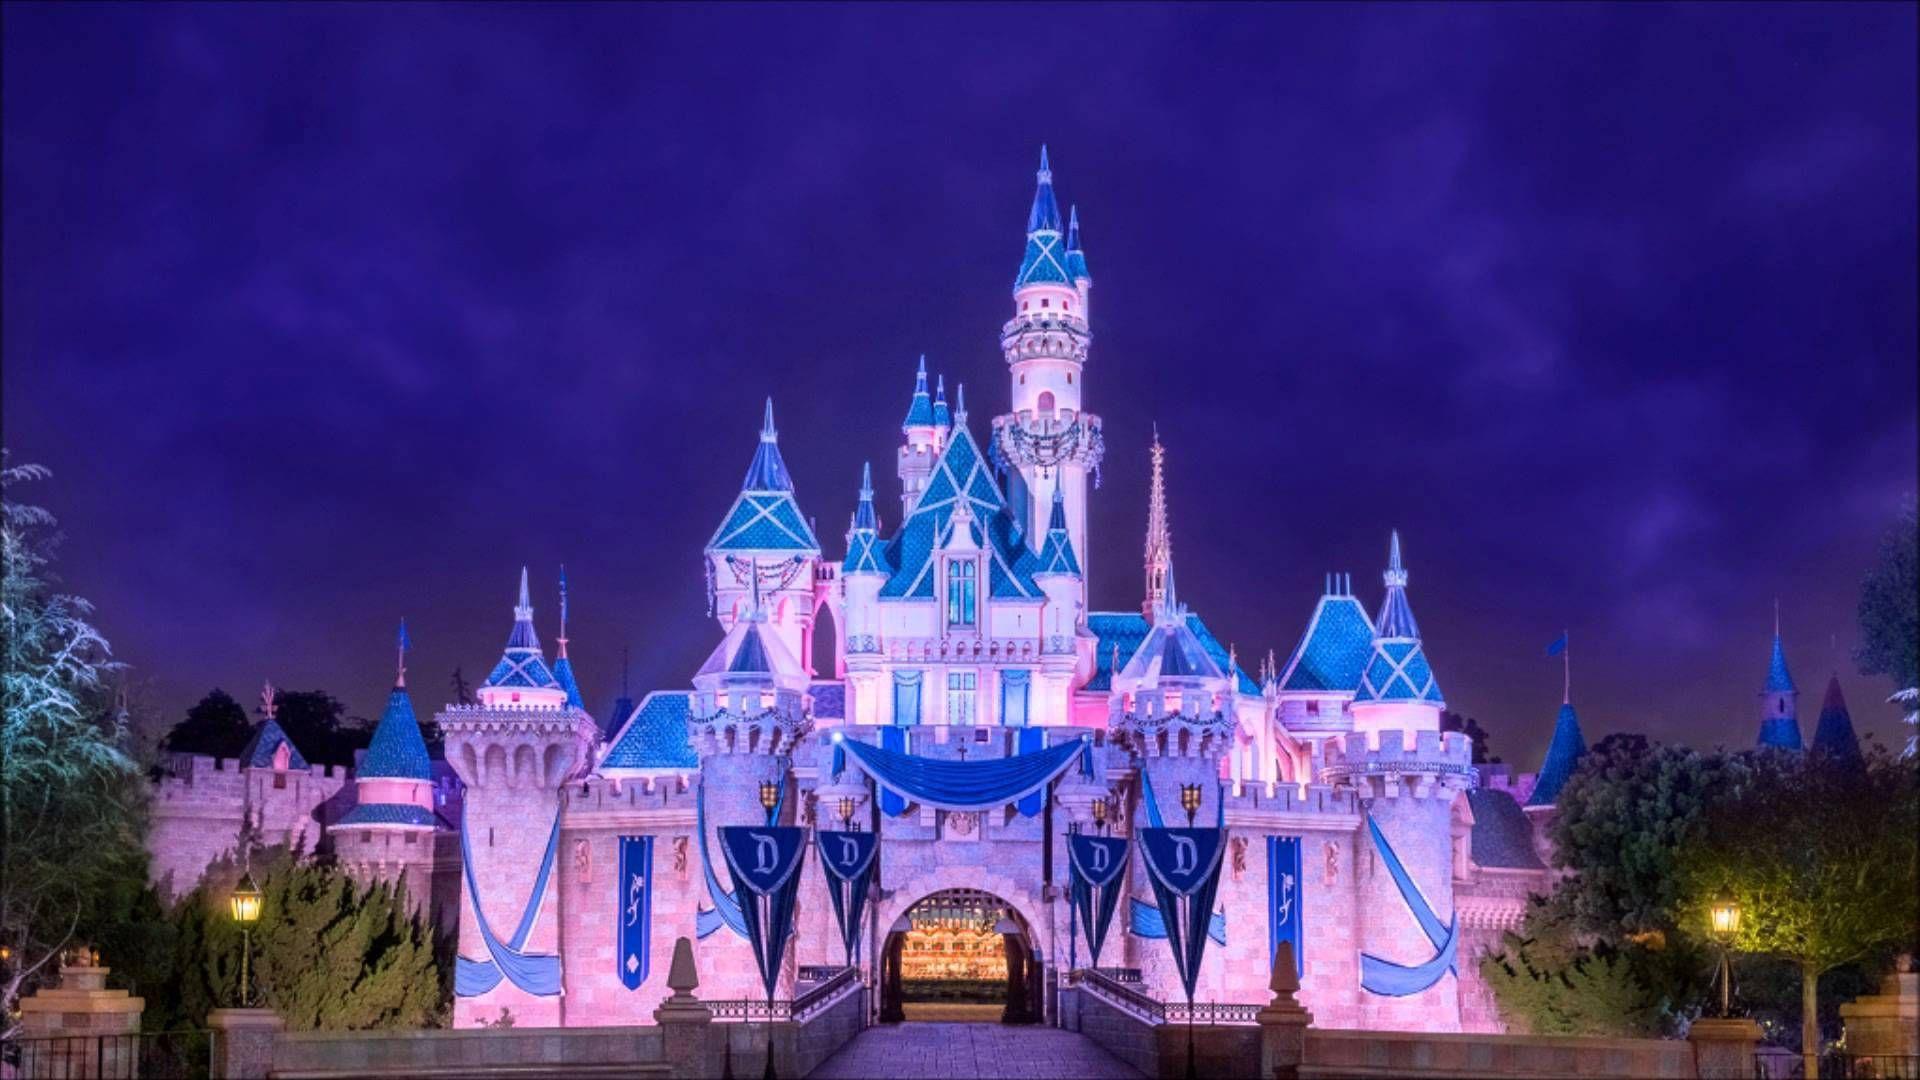 Sleeping Beauty Castle Disneyland HD desktop wallpaper